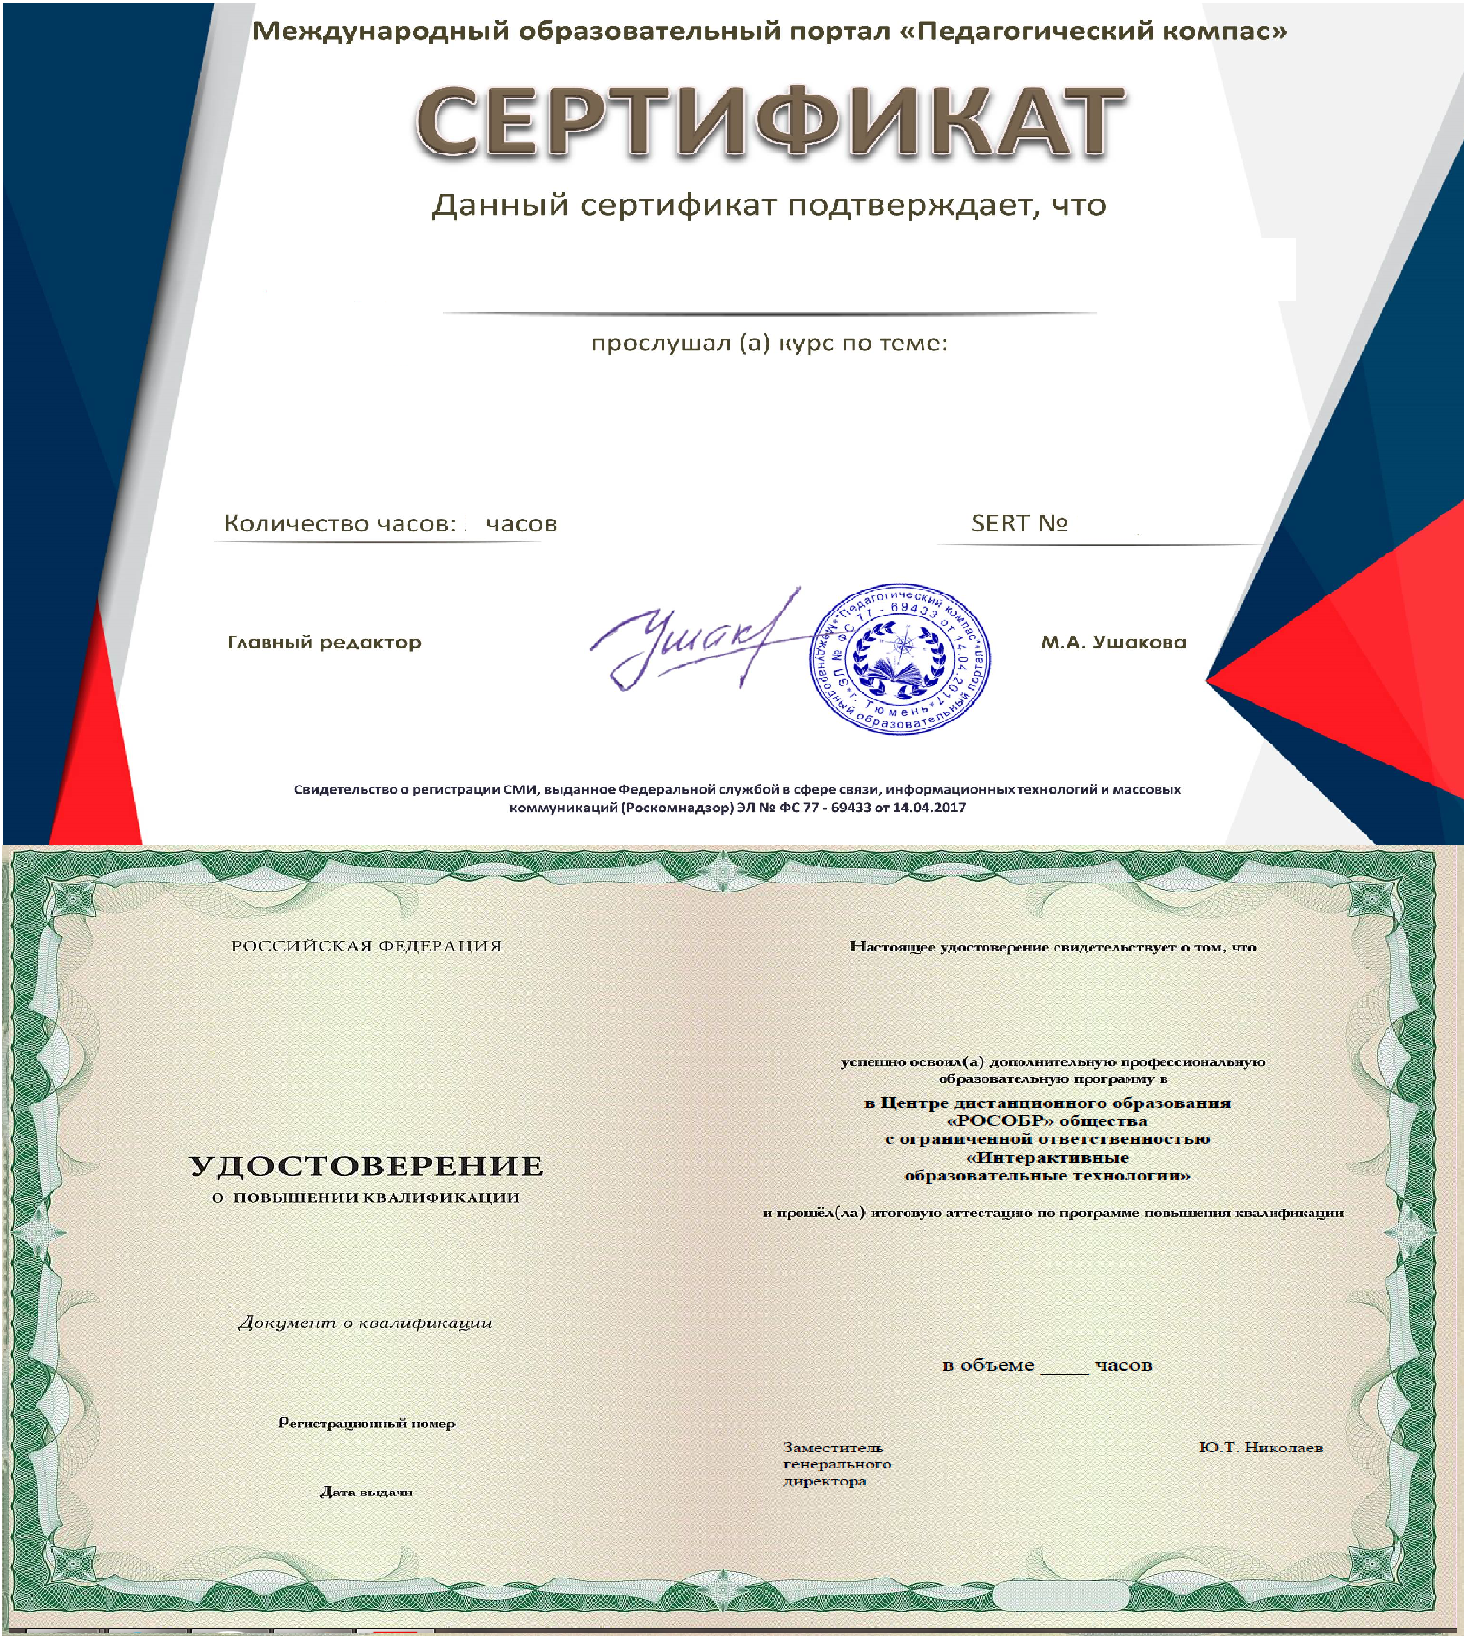 Сертификат повышения